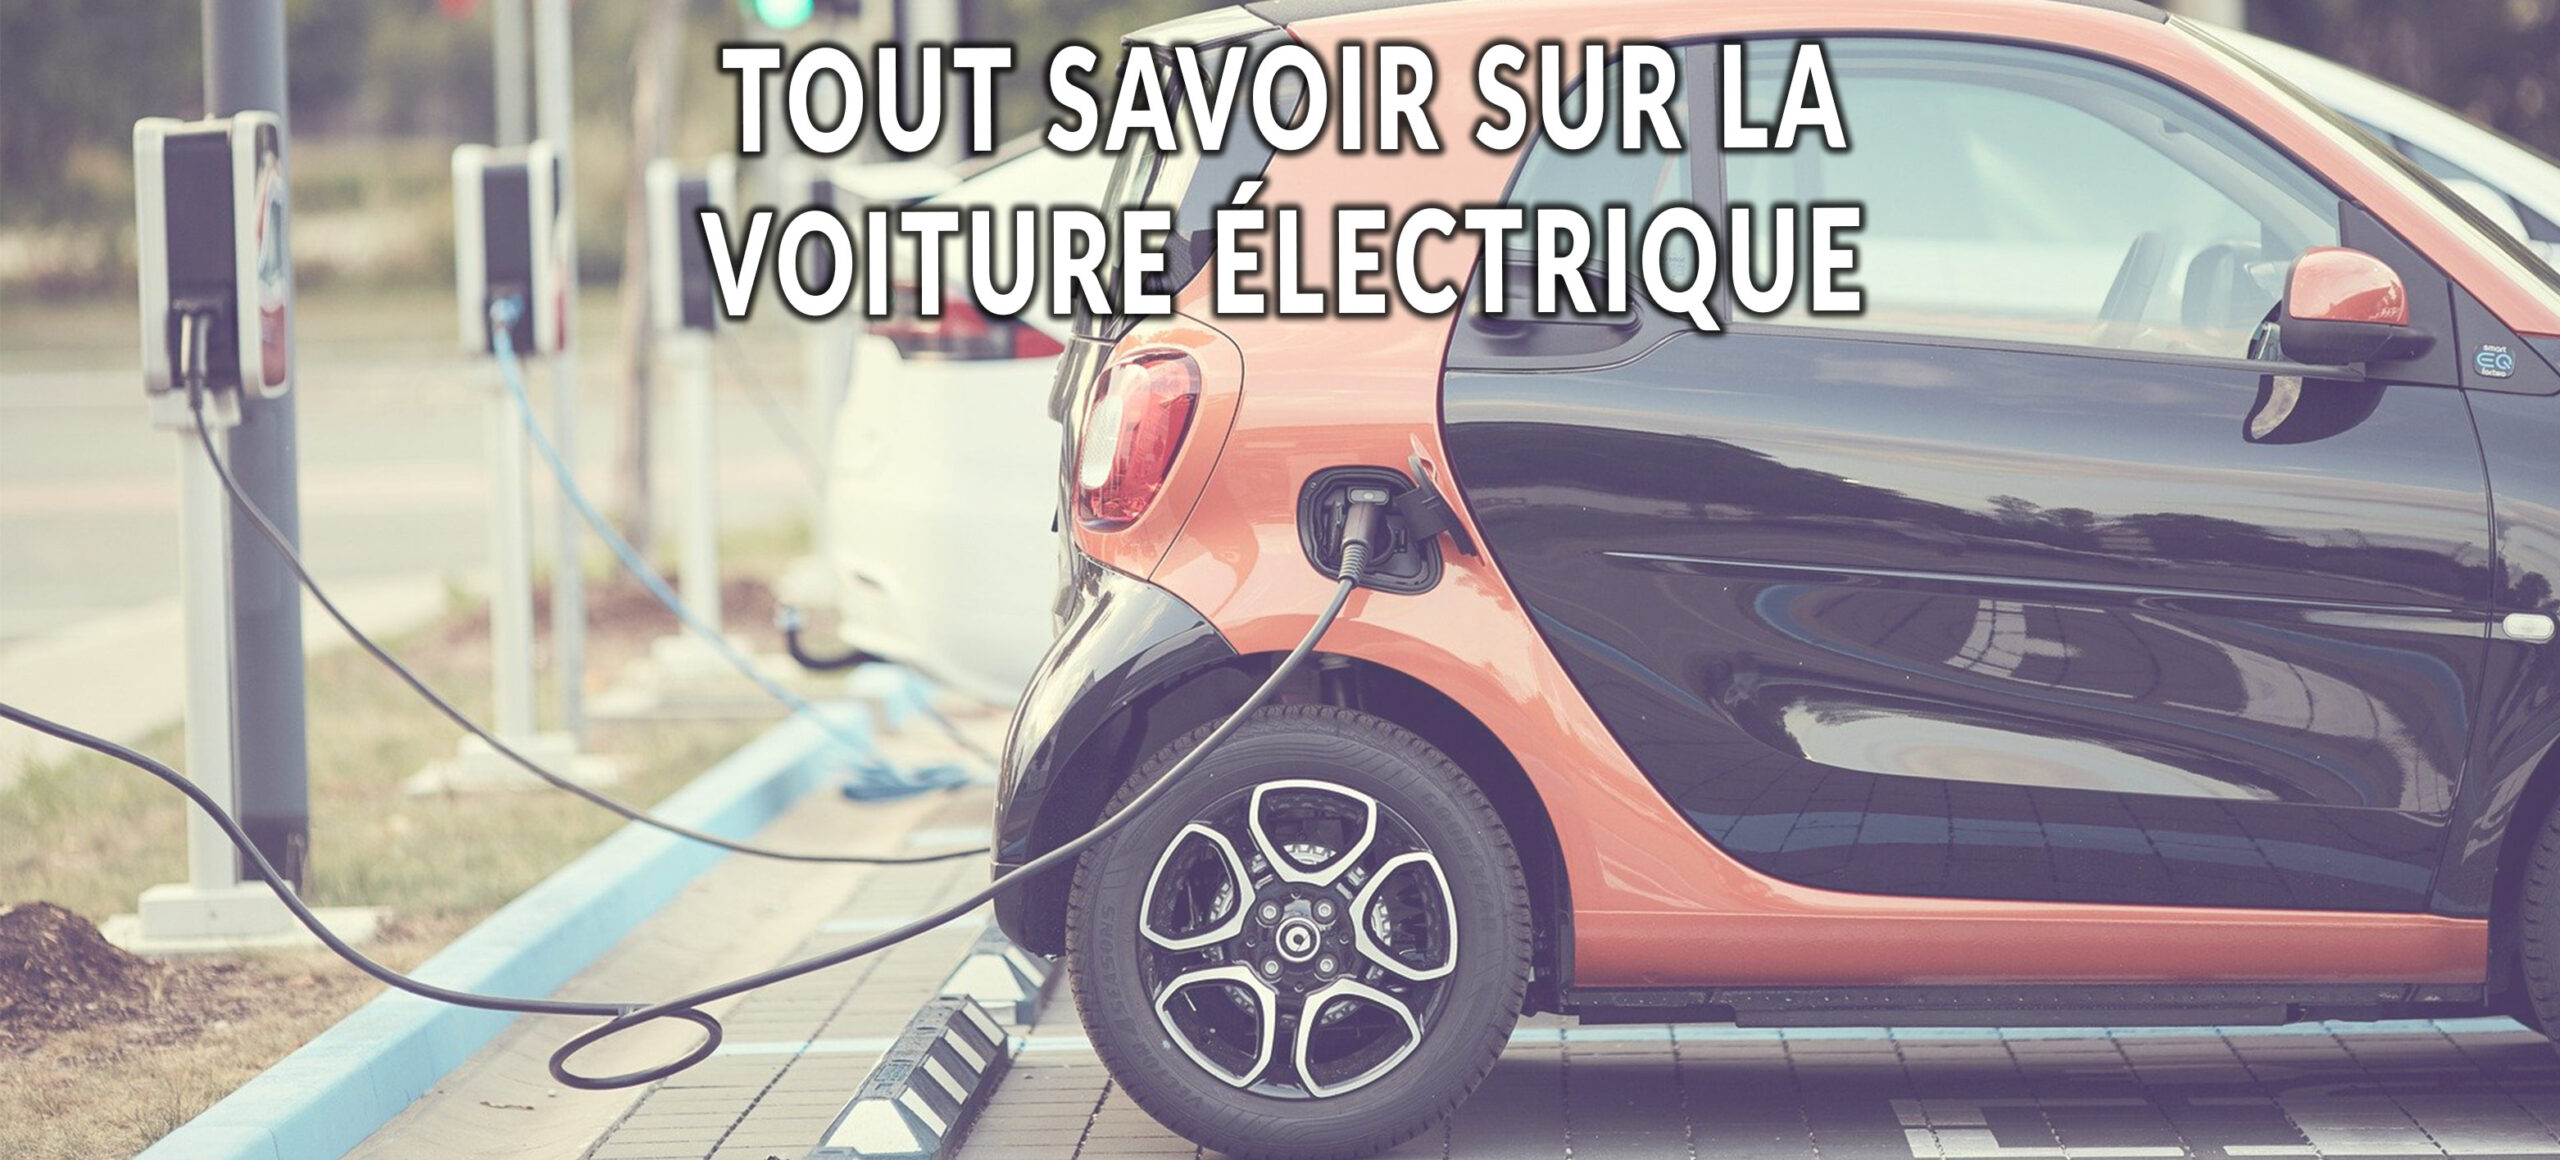 Adoptez une voiture électrique !